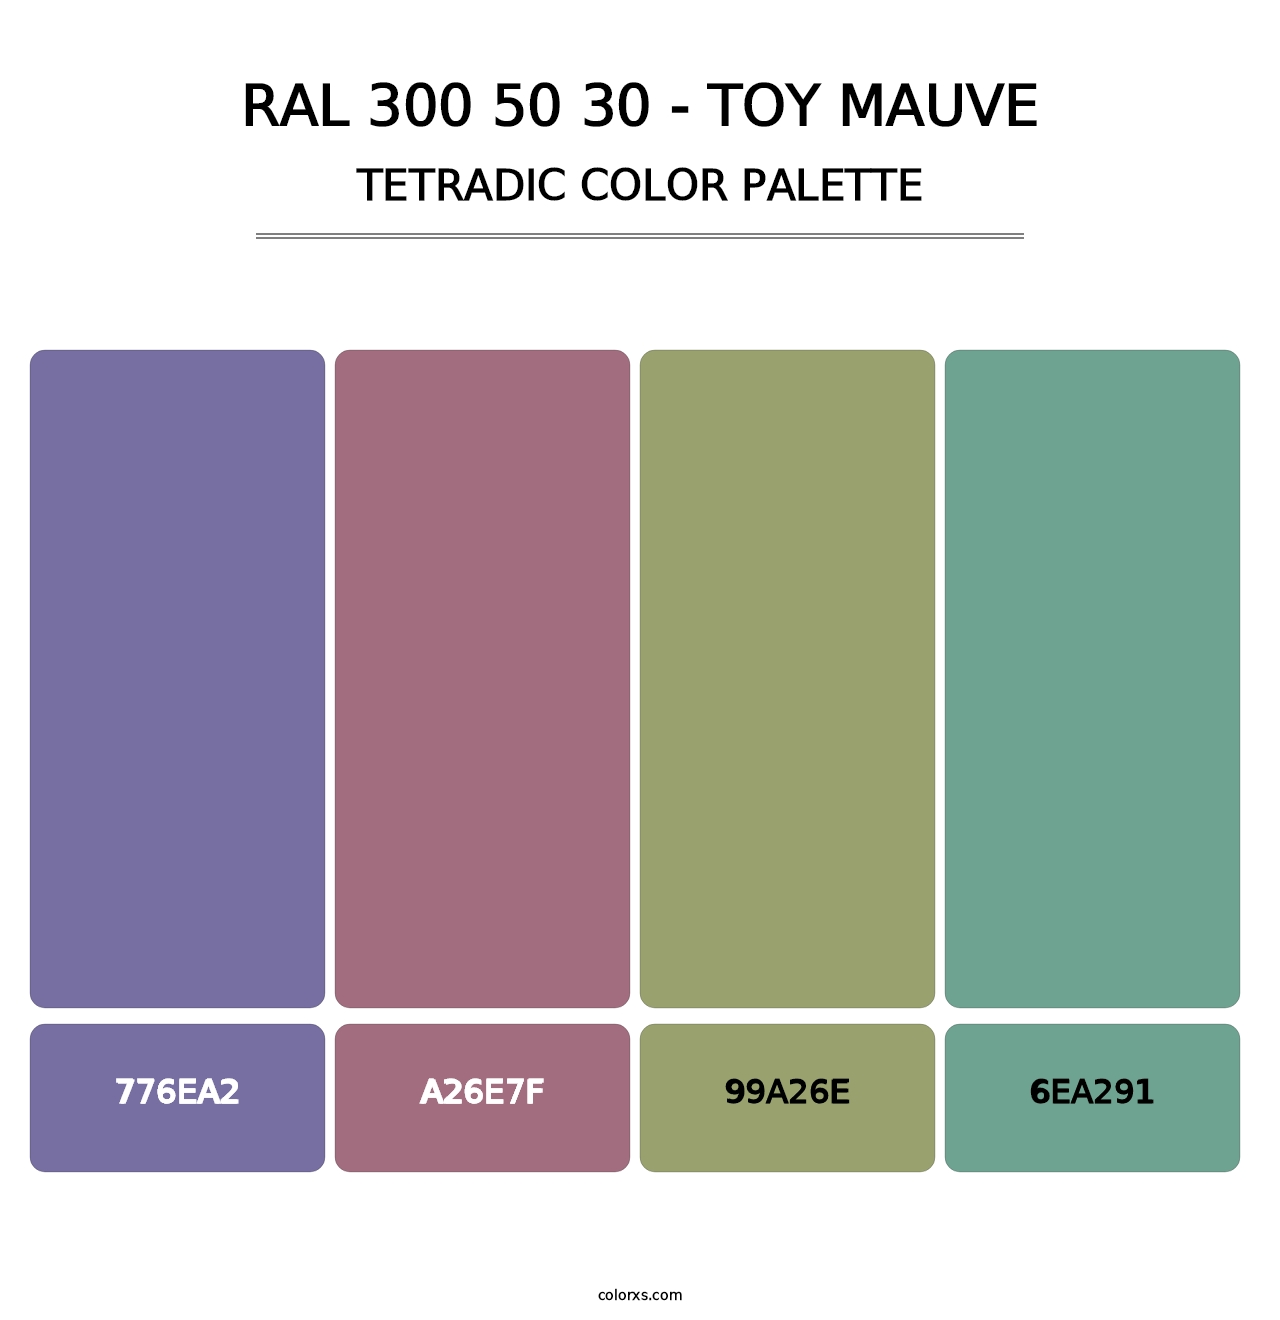 RAL 300 50 30 - Toy Mauve - Tetradic Color Palette